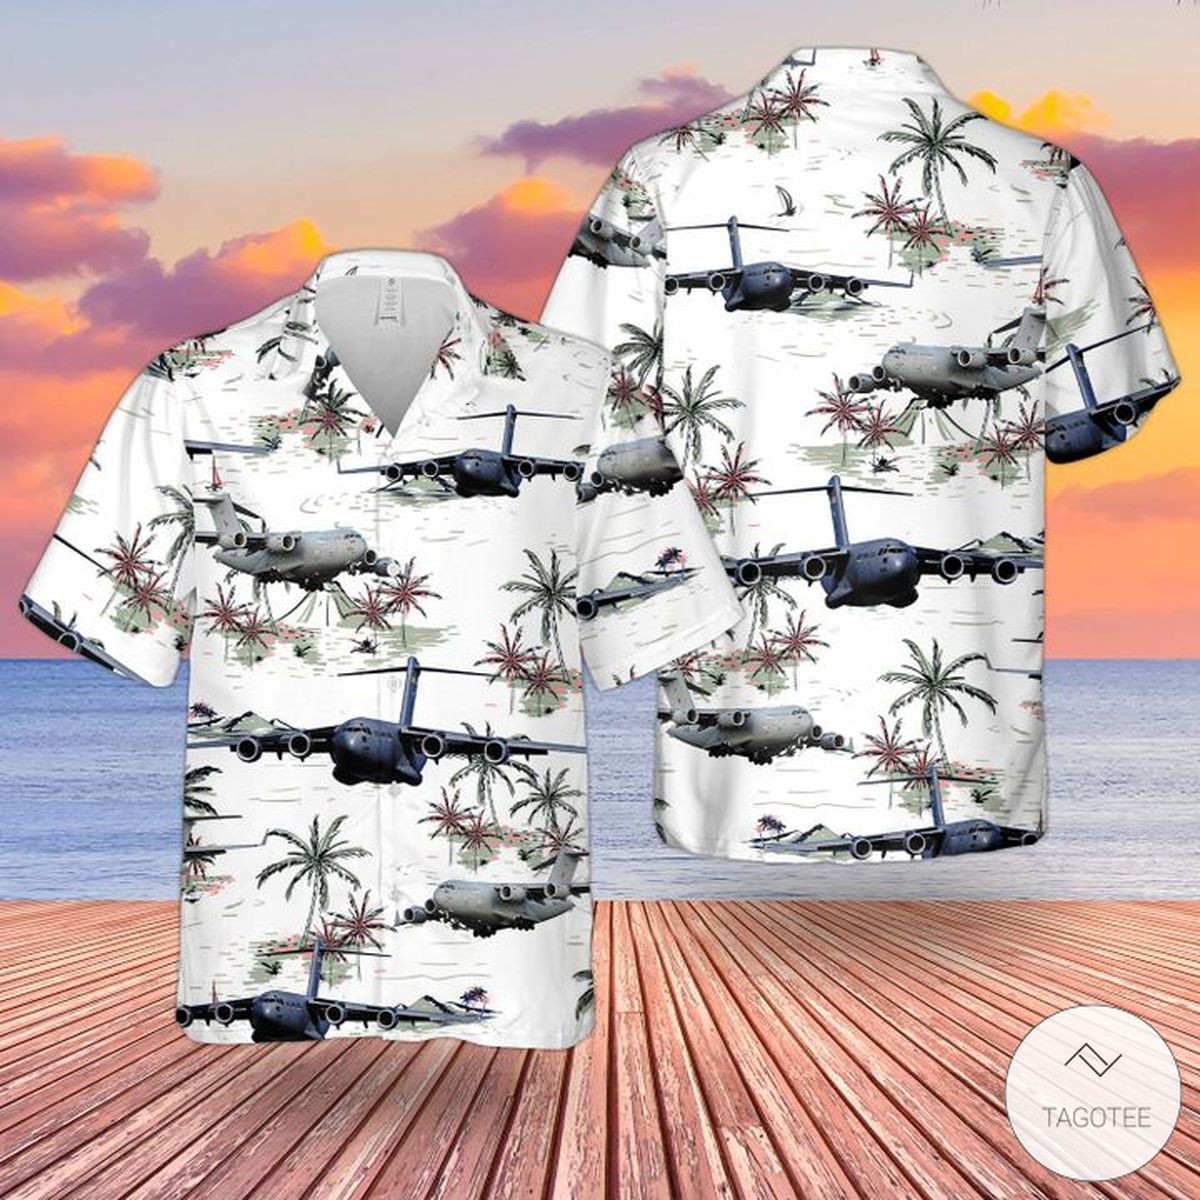 Raf Boeing C-17 Globemaster Iiiuk C-17 Hawaiian Shirts